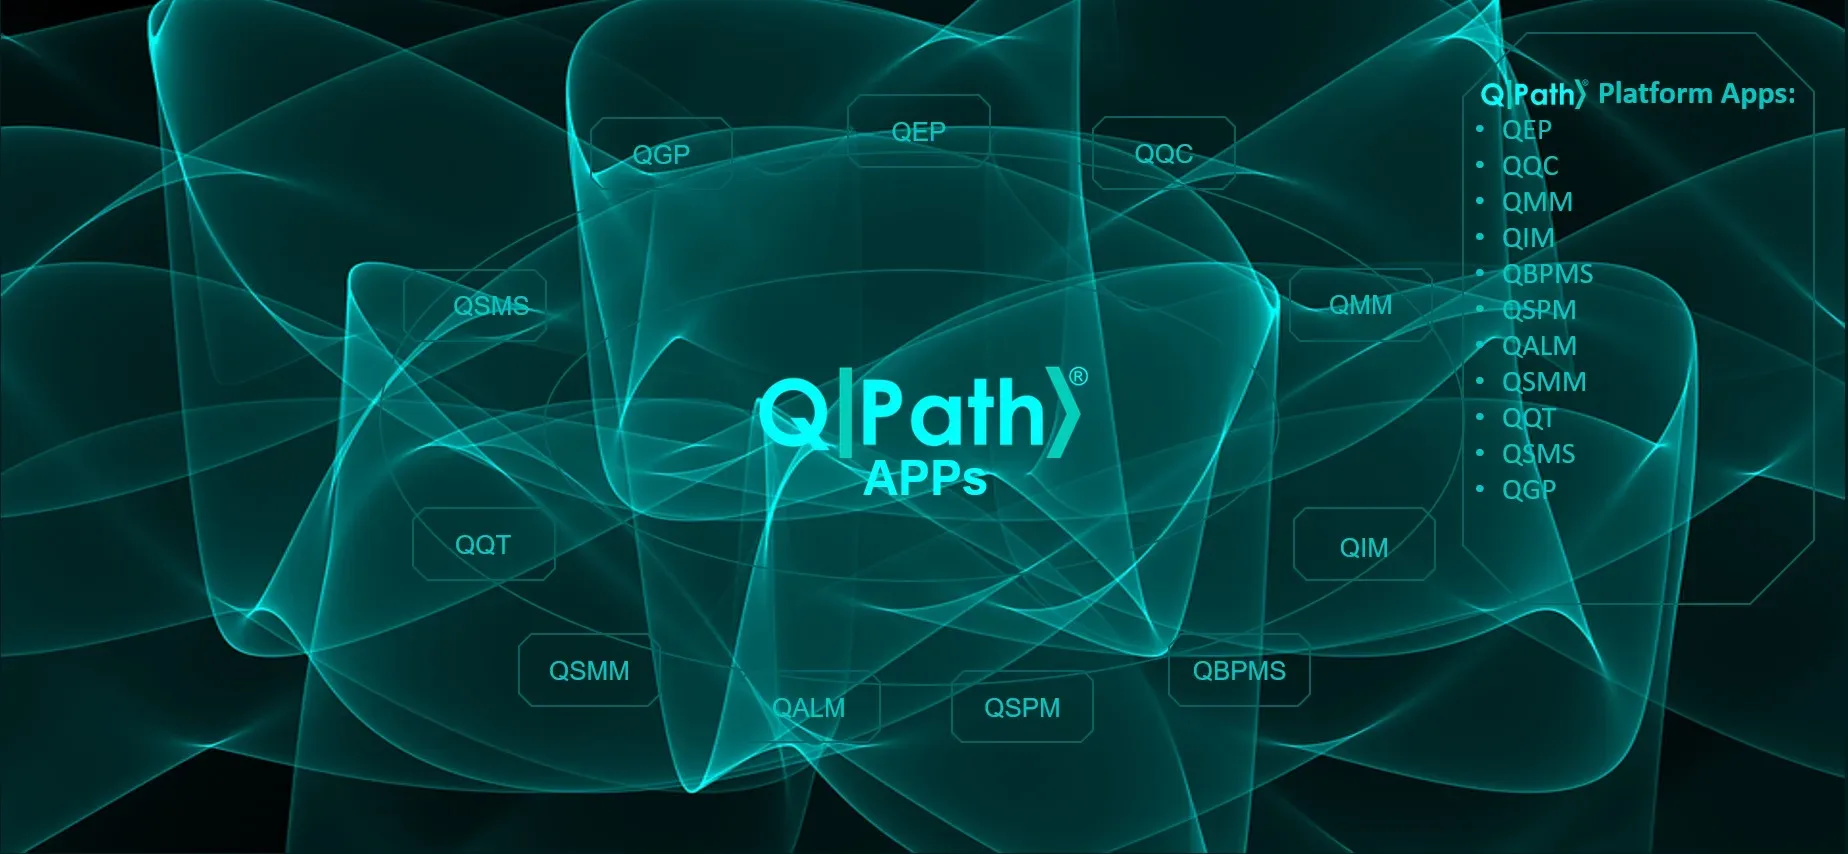 Quantum Computing Company Aquantum Develops Qpath, A Platform Built To Support And Accelerate Quantum Software.